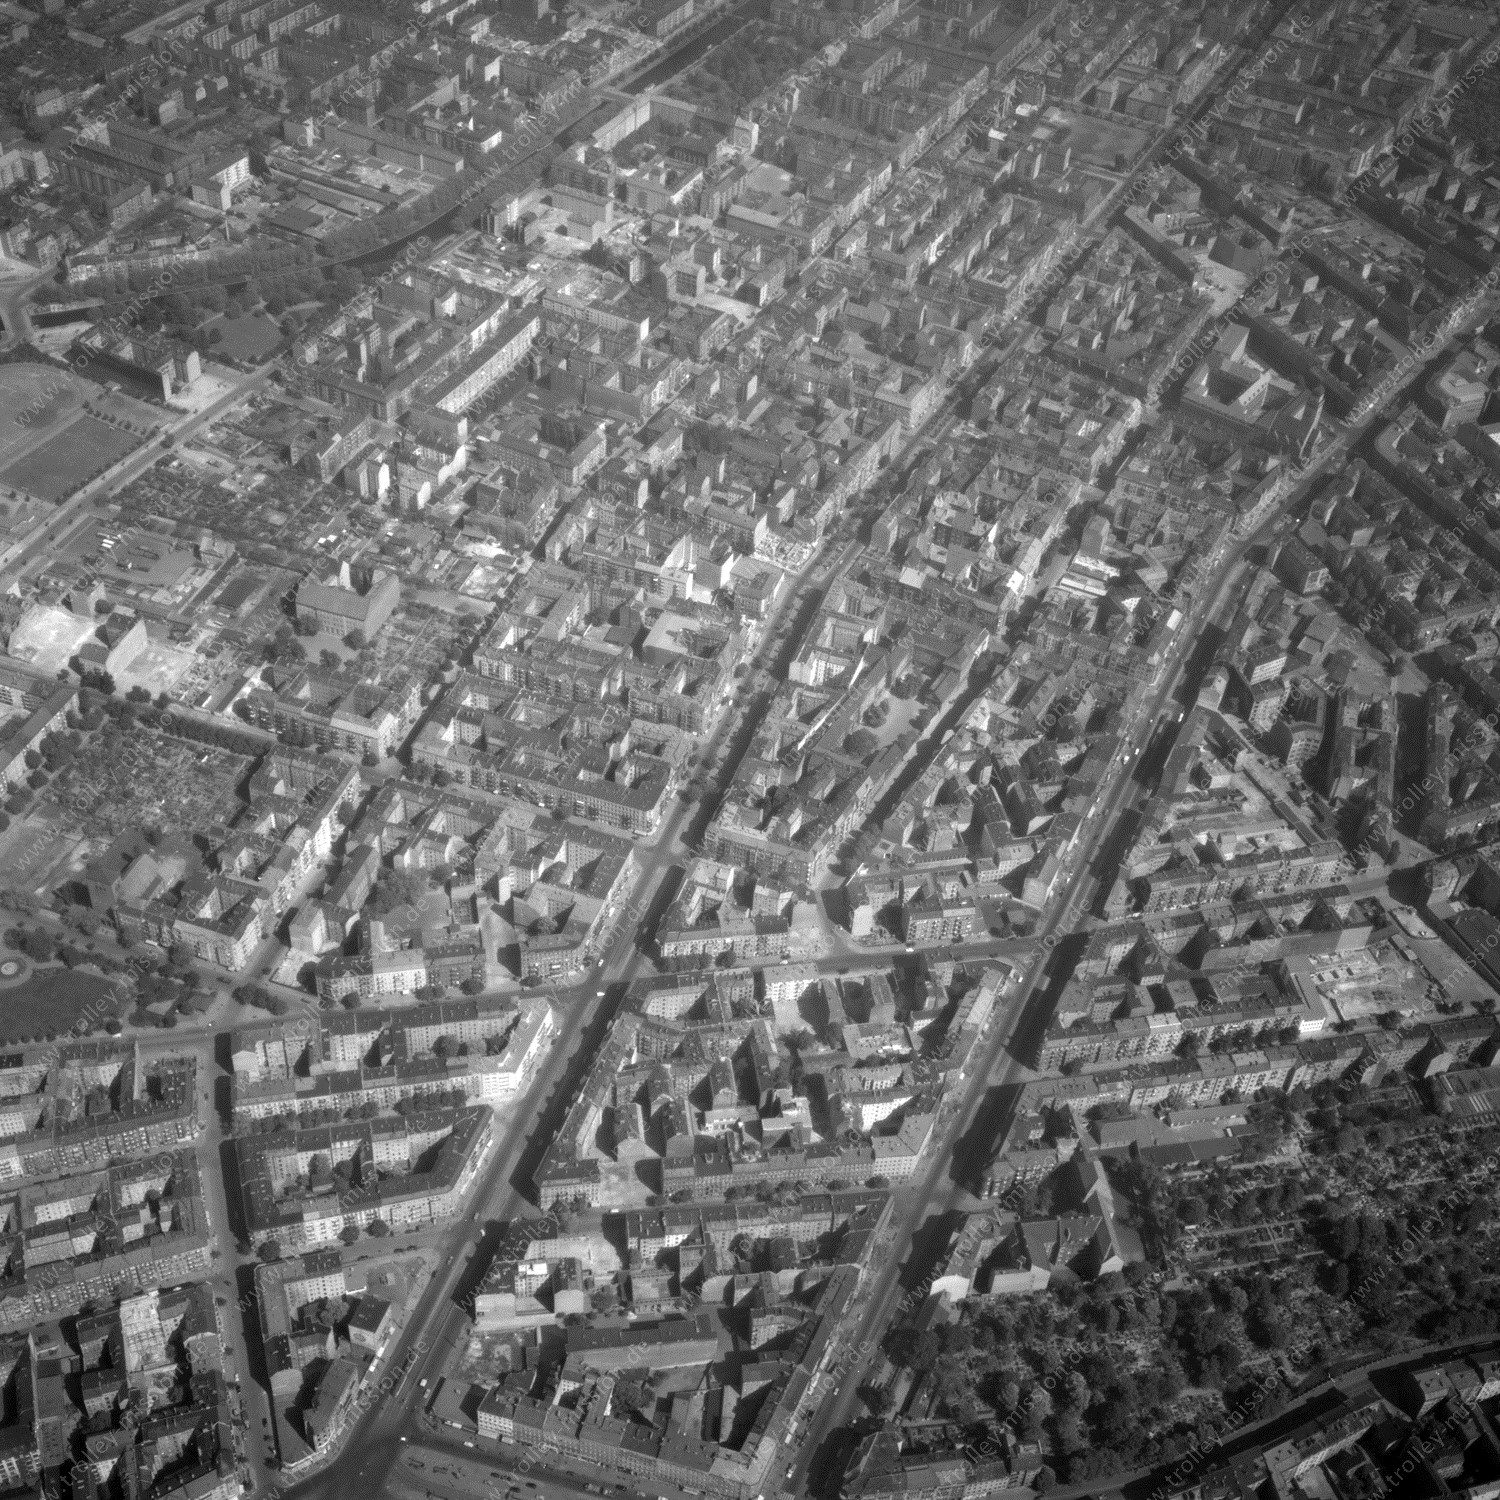 Alte Fotos und Luftbilder von Berlin - Luftbildaufnahme Nr. 02 - Historische Luftaufnahmen von West-Berlin aus dem Jahr 1954 - Flugstrecke Mike